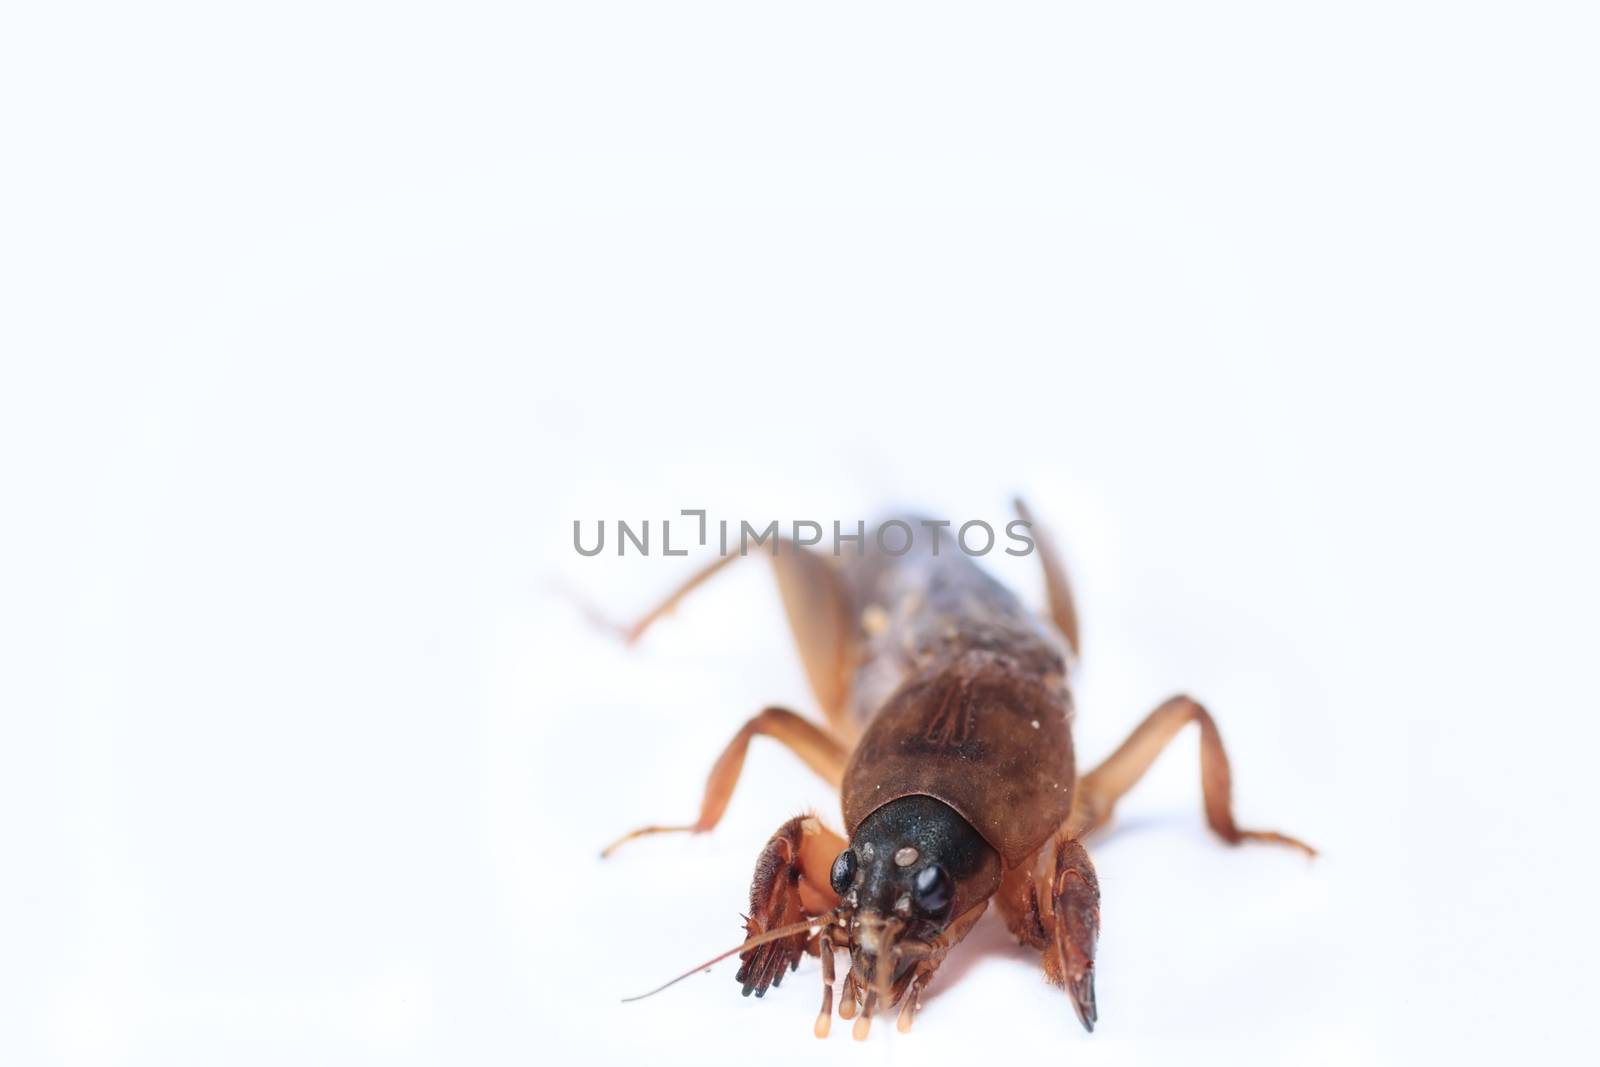 Mole cricket isolated on white background (Gryllotalpidae)